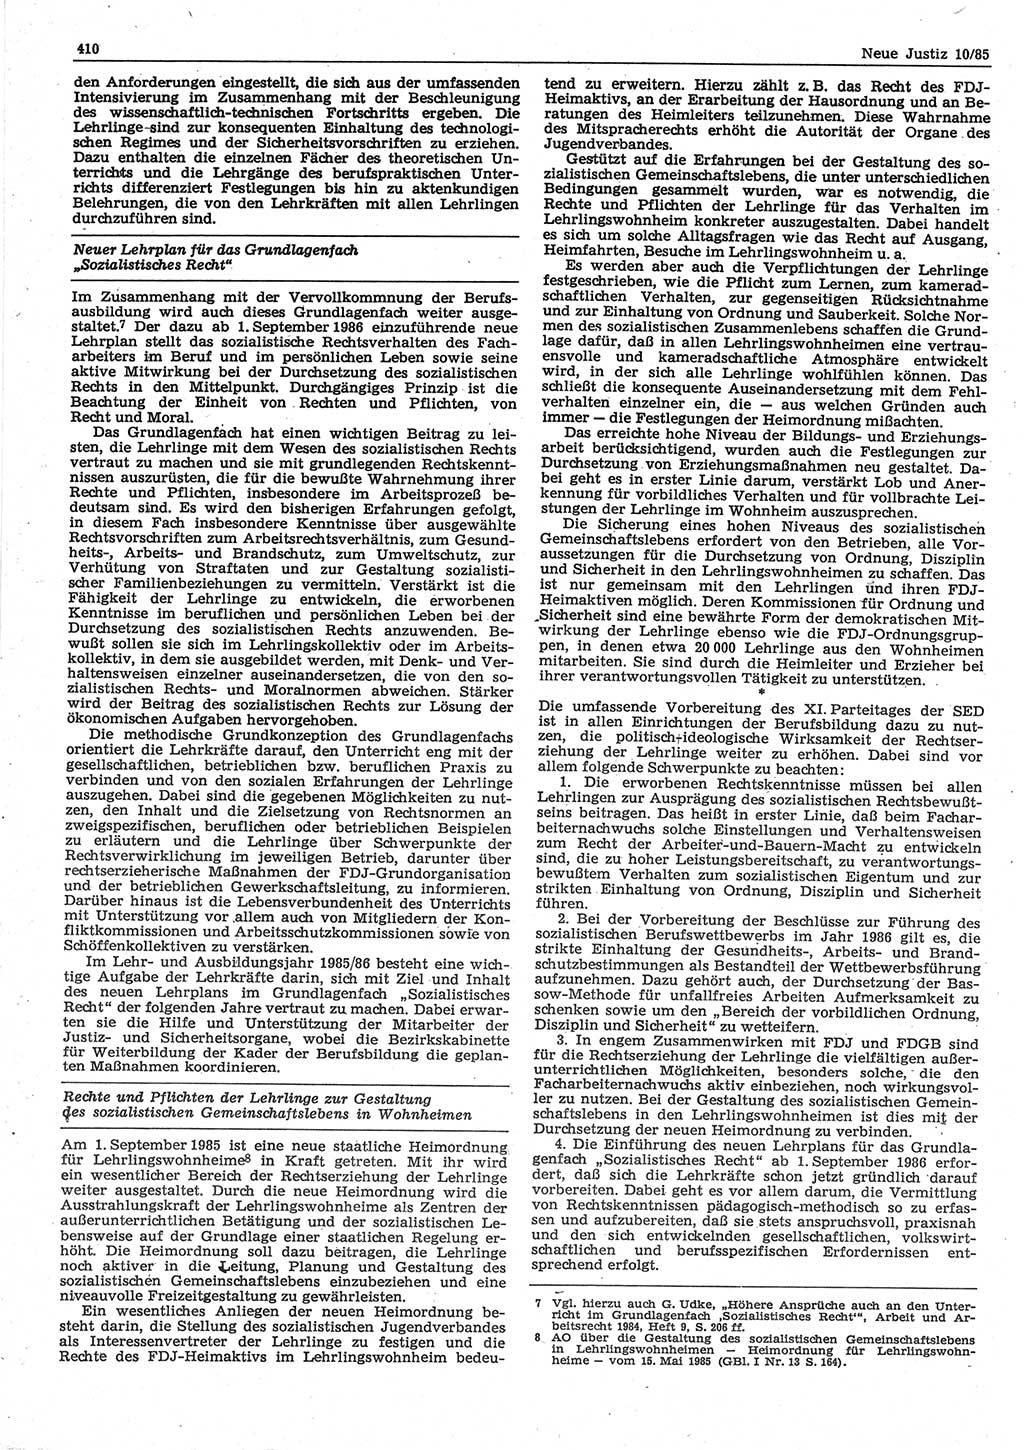 Neue Justiz (NJ), Zeitschrift für sozialistisches Recht und Gesetzlichkeit [Deutsche Demokratische Republik (DDR)], 39. Jahrgang 1985, Seite 410 (NJ DDR 1985, S. 410)